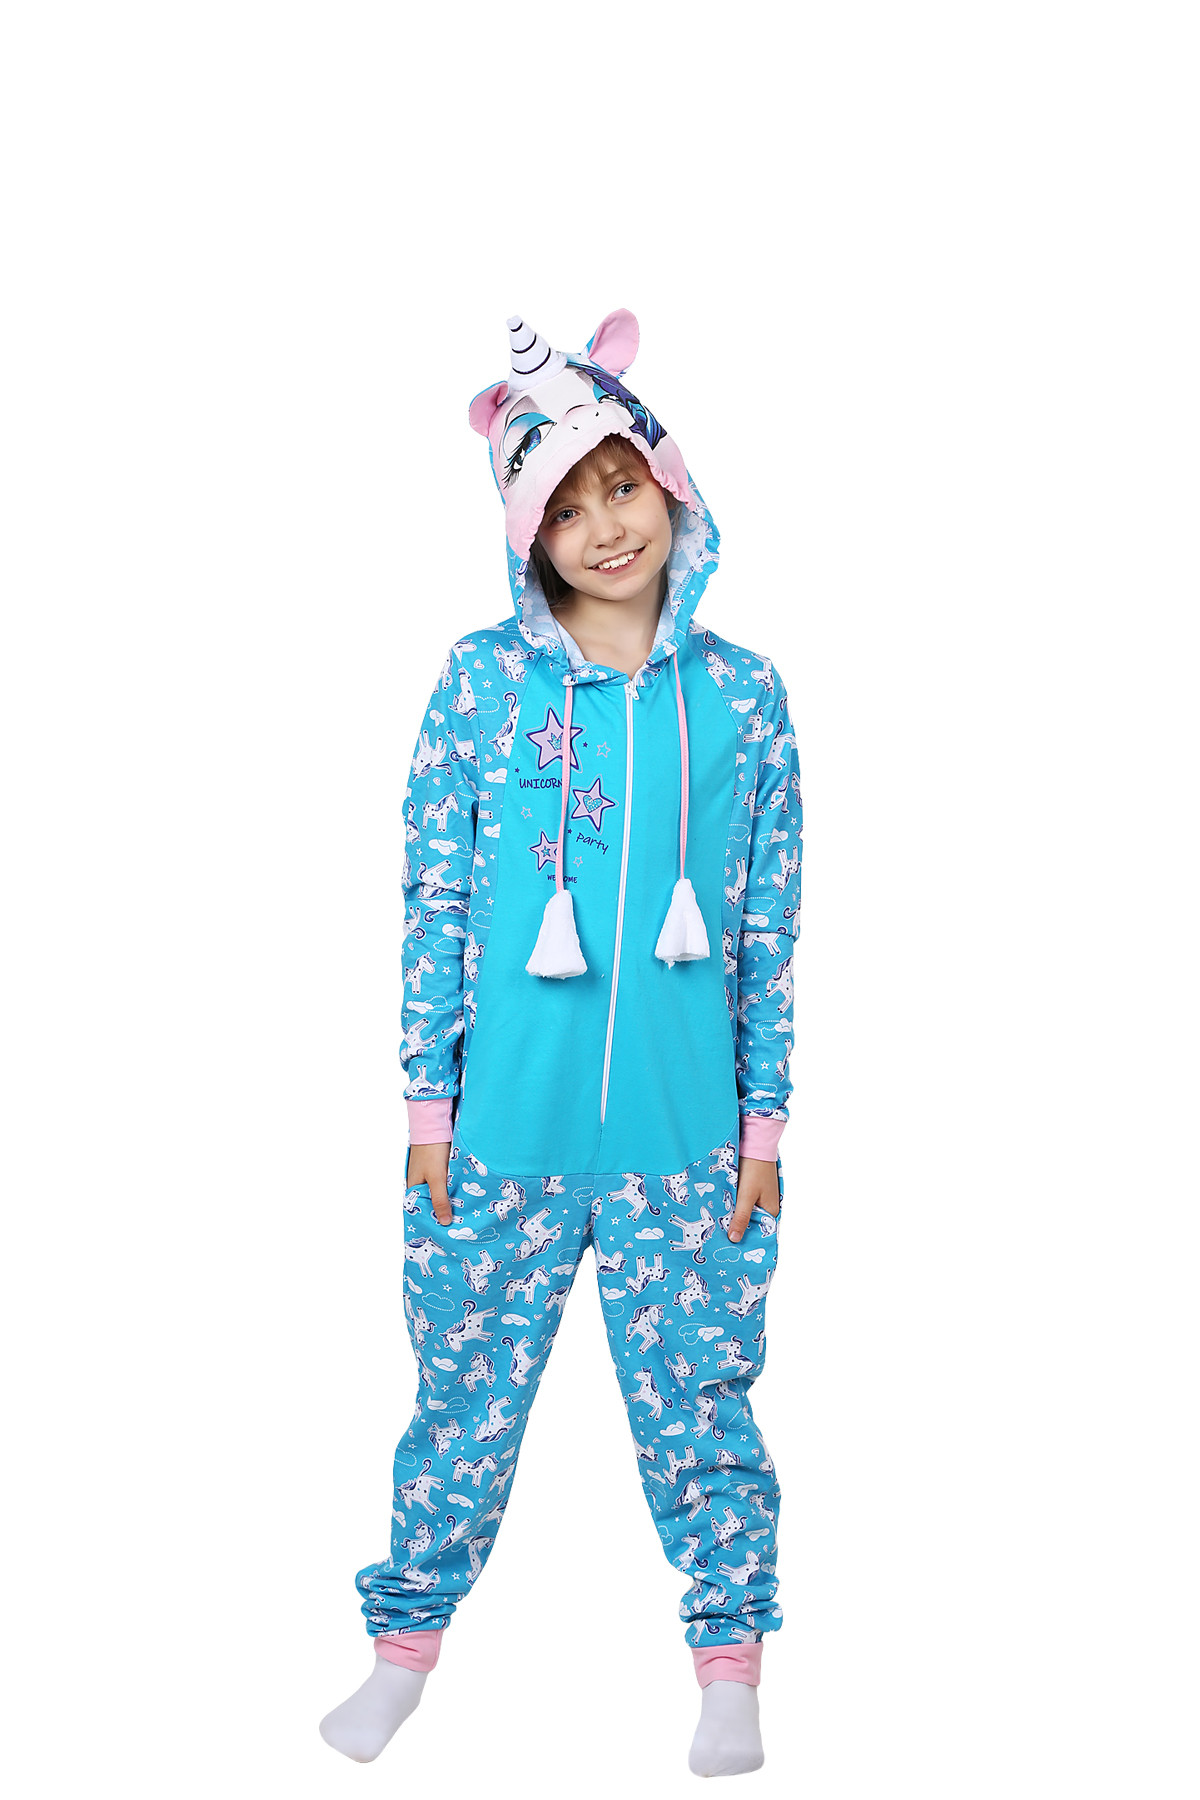 Детская пижама-кигуруми Единорожка Цвет: Бирюзовый (4-5 лет), размер 4-5 лет